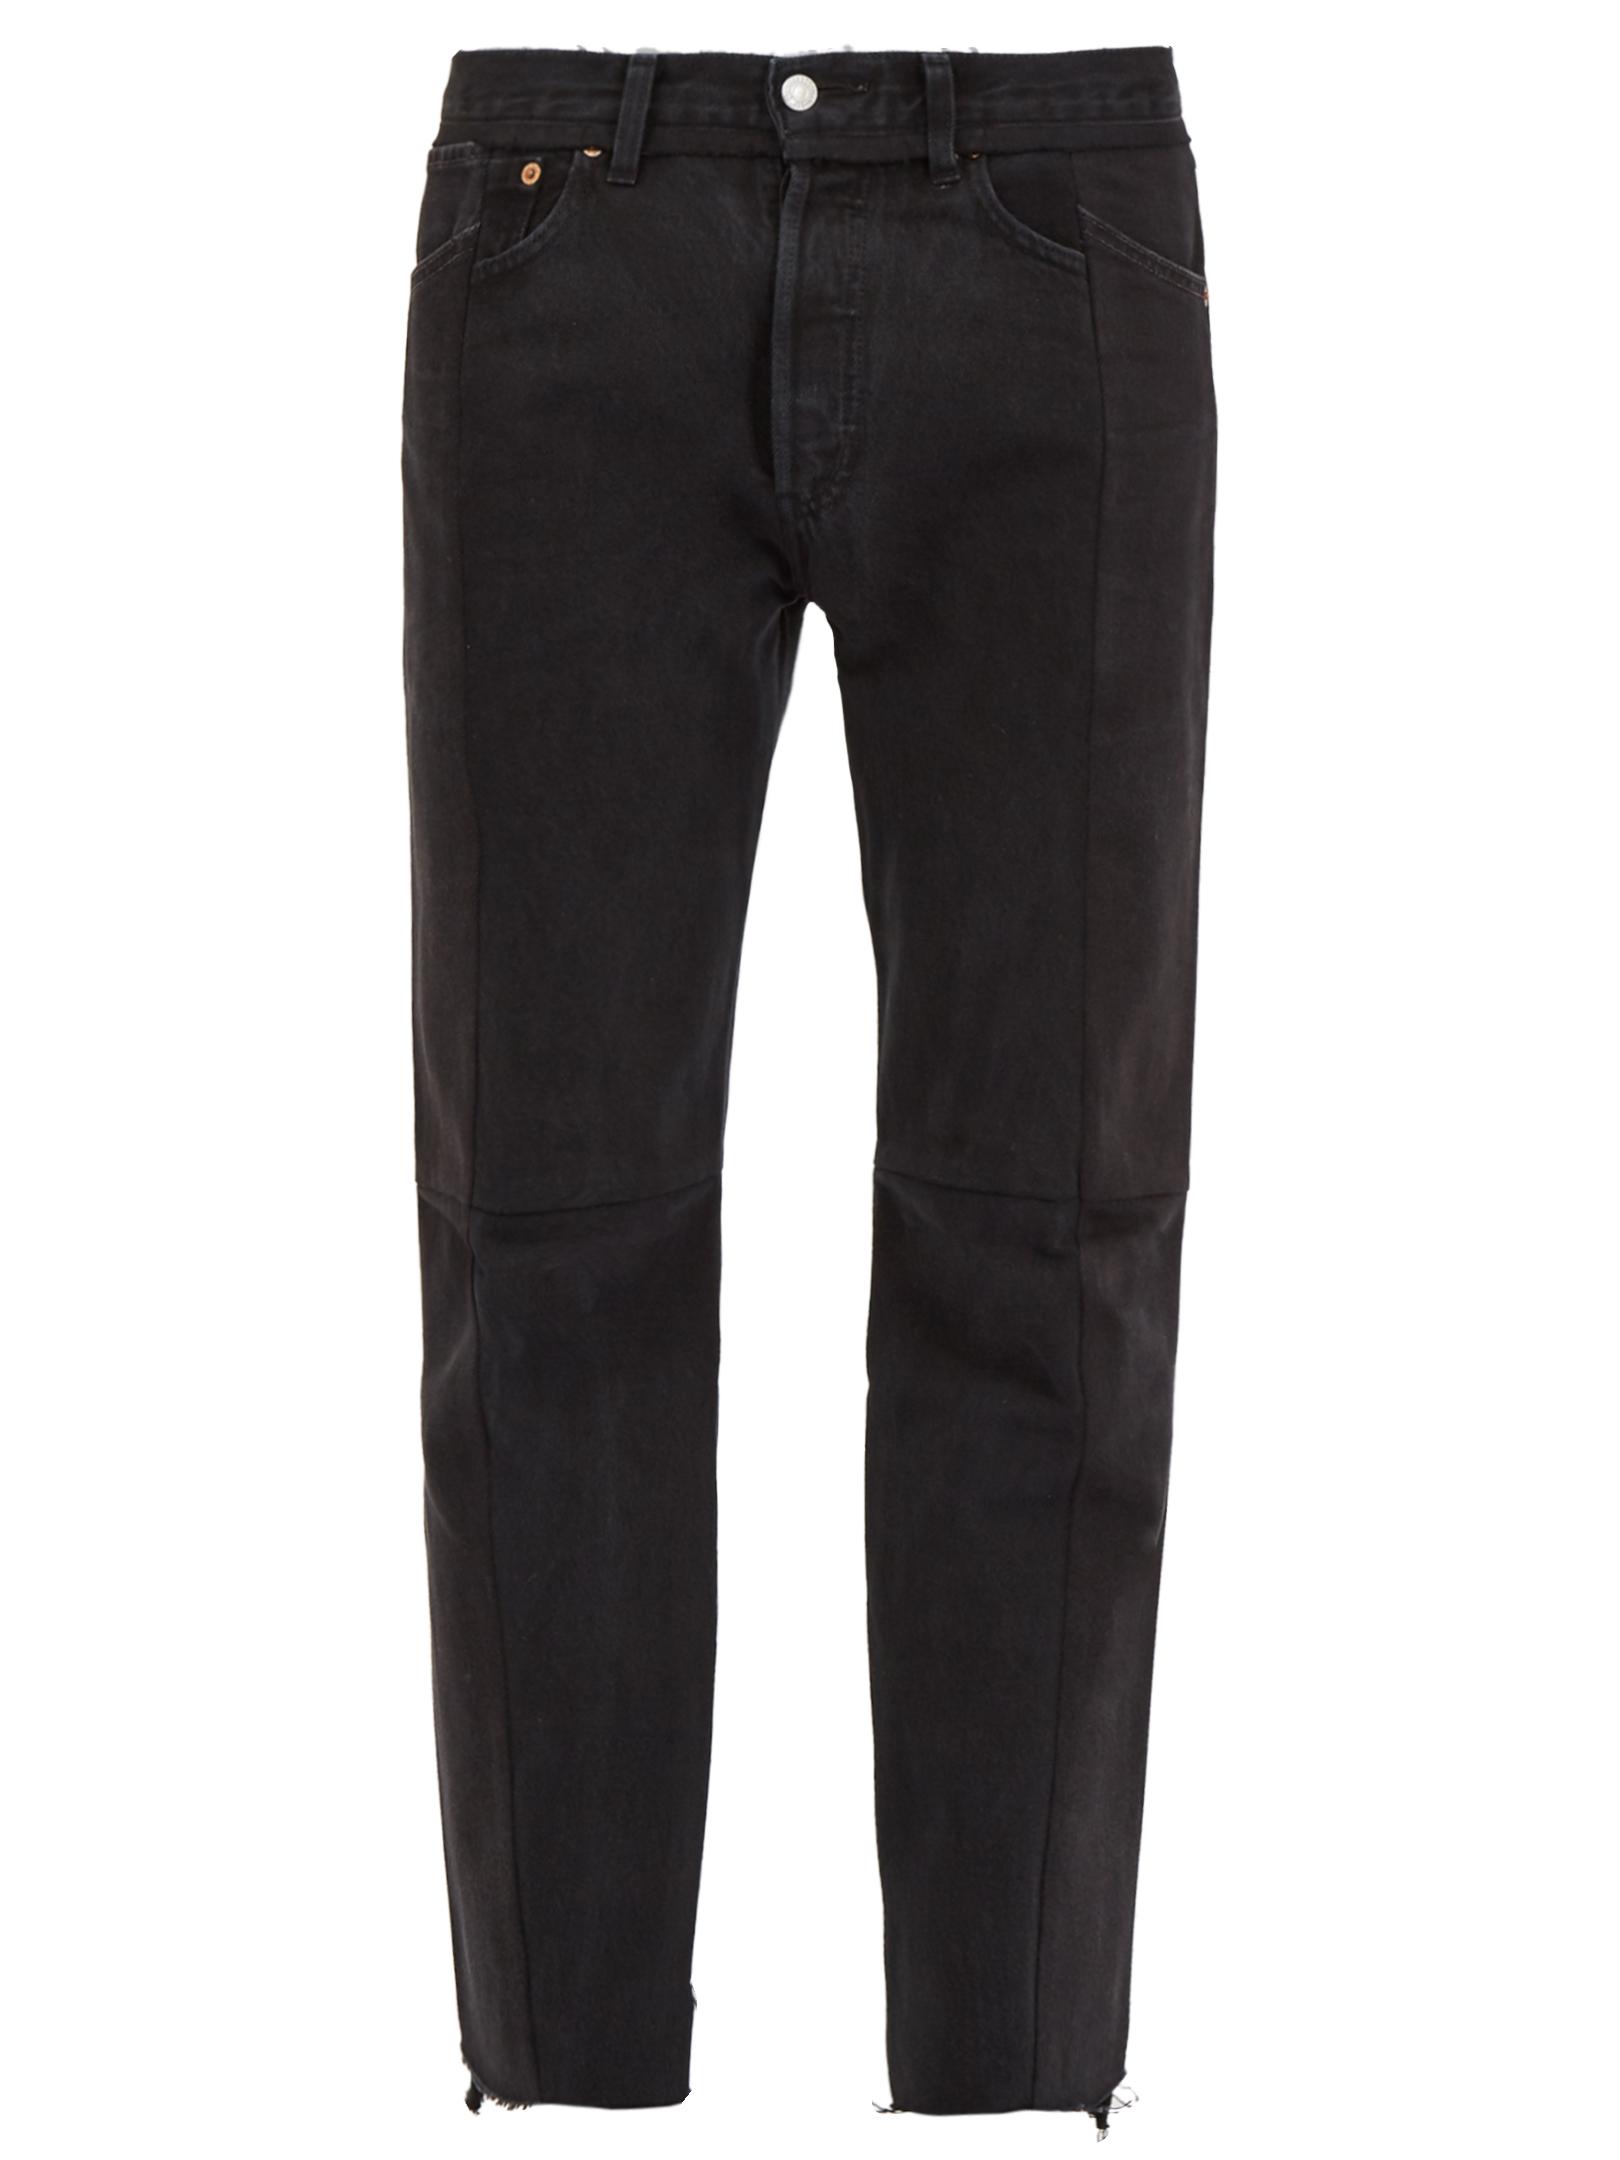 Vetements Denim Deconstructed Straight-leg Jeans in Black for Men - Lyst